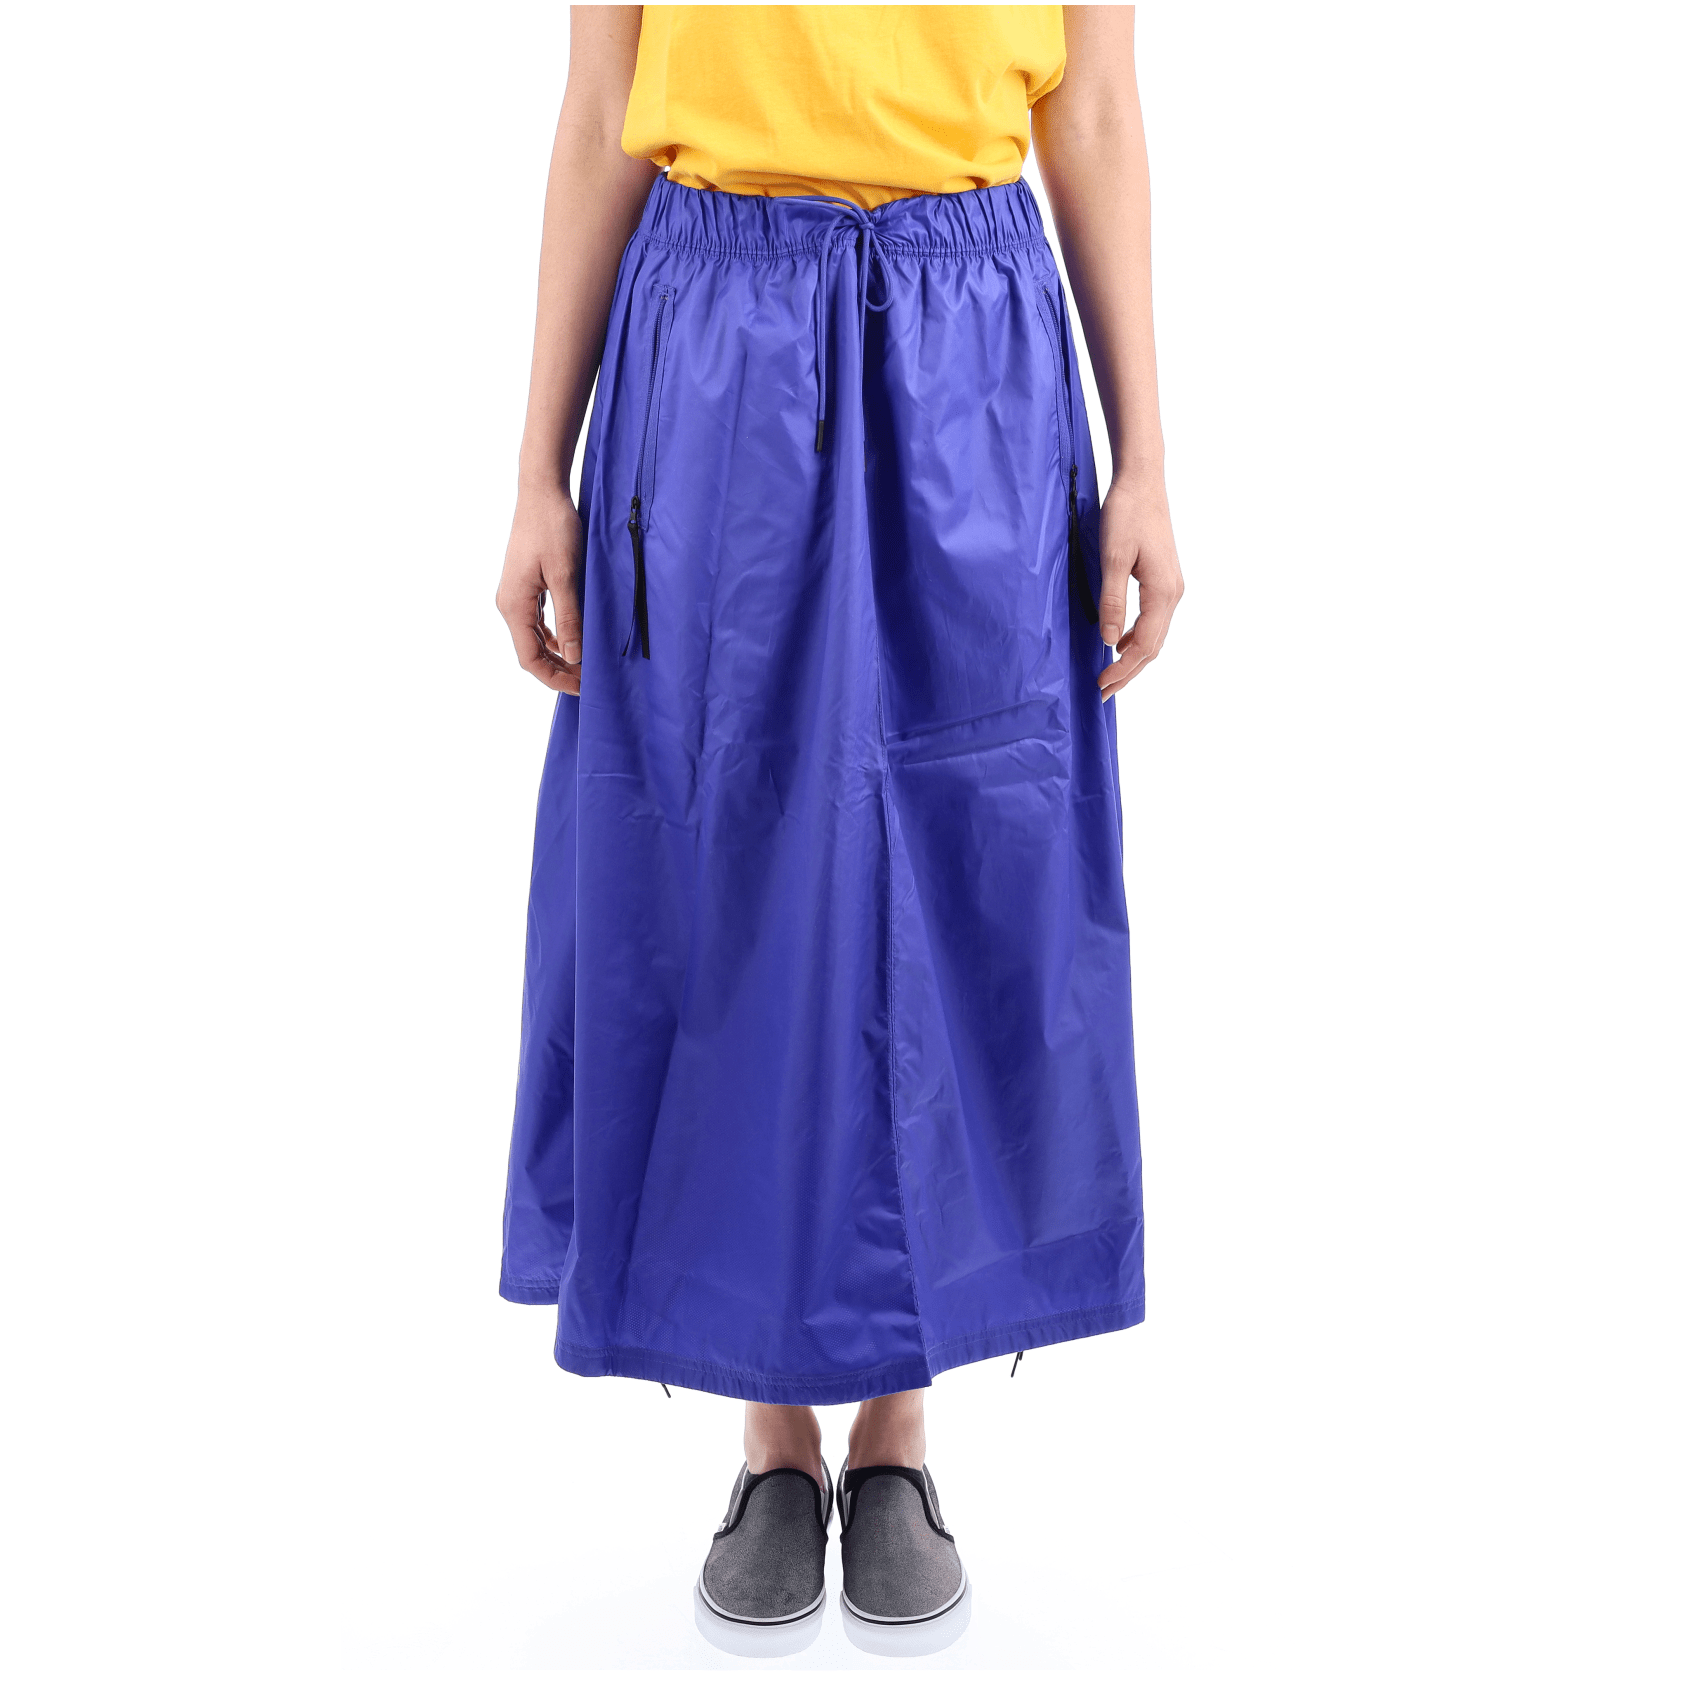 Tech Pack Skirt - Blue.